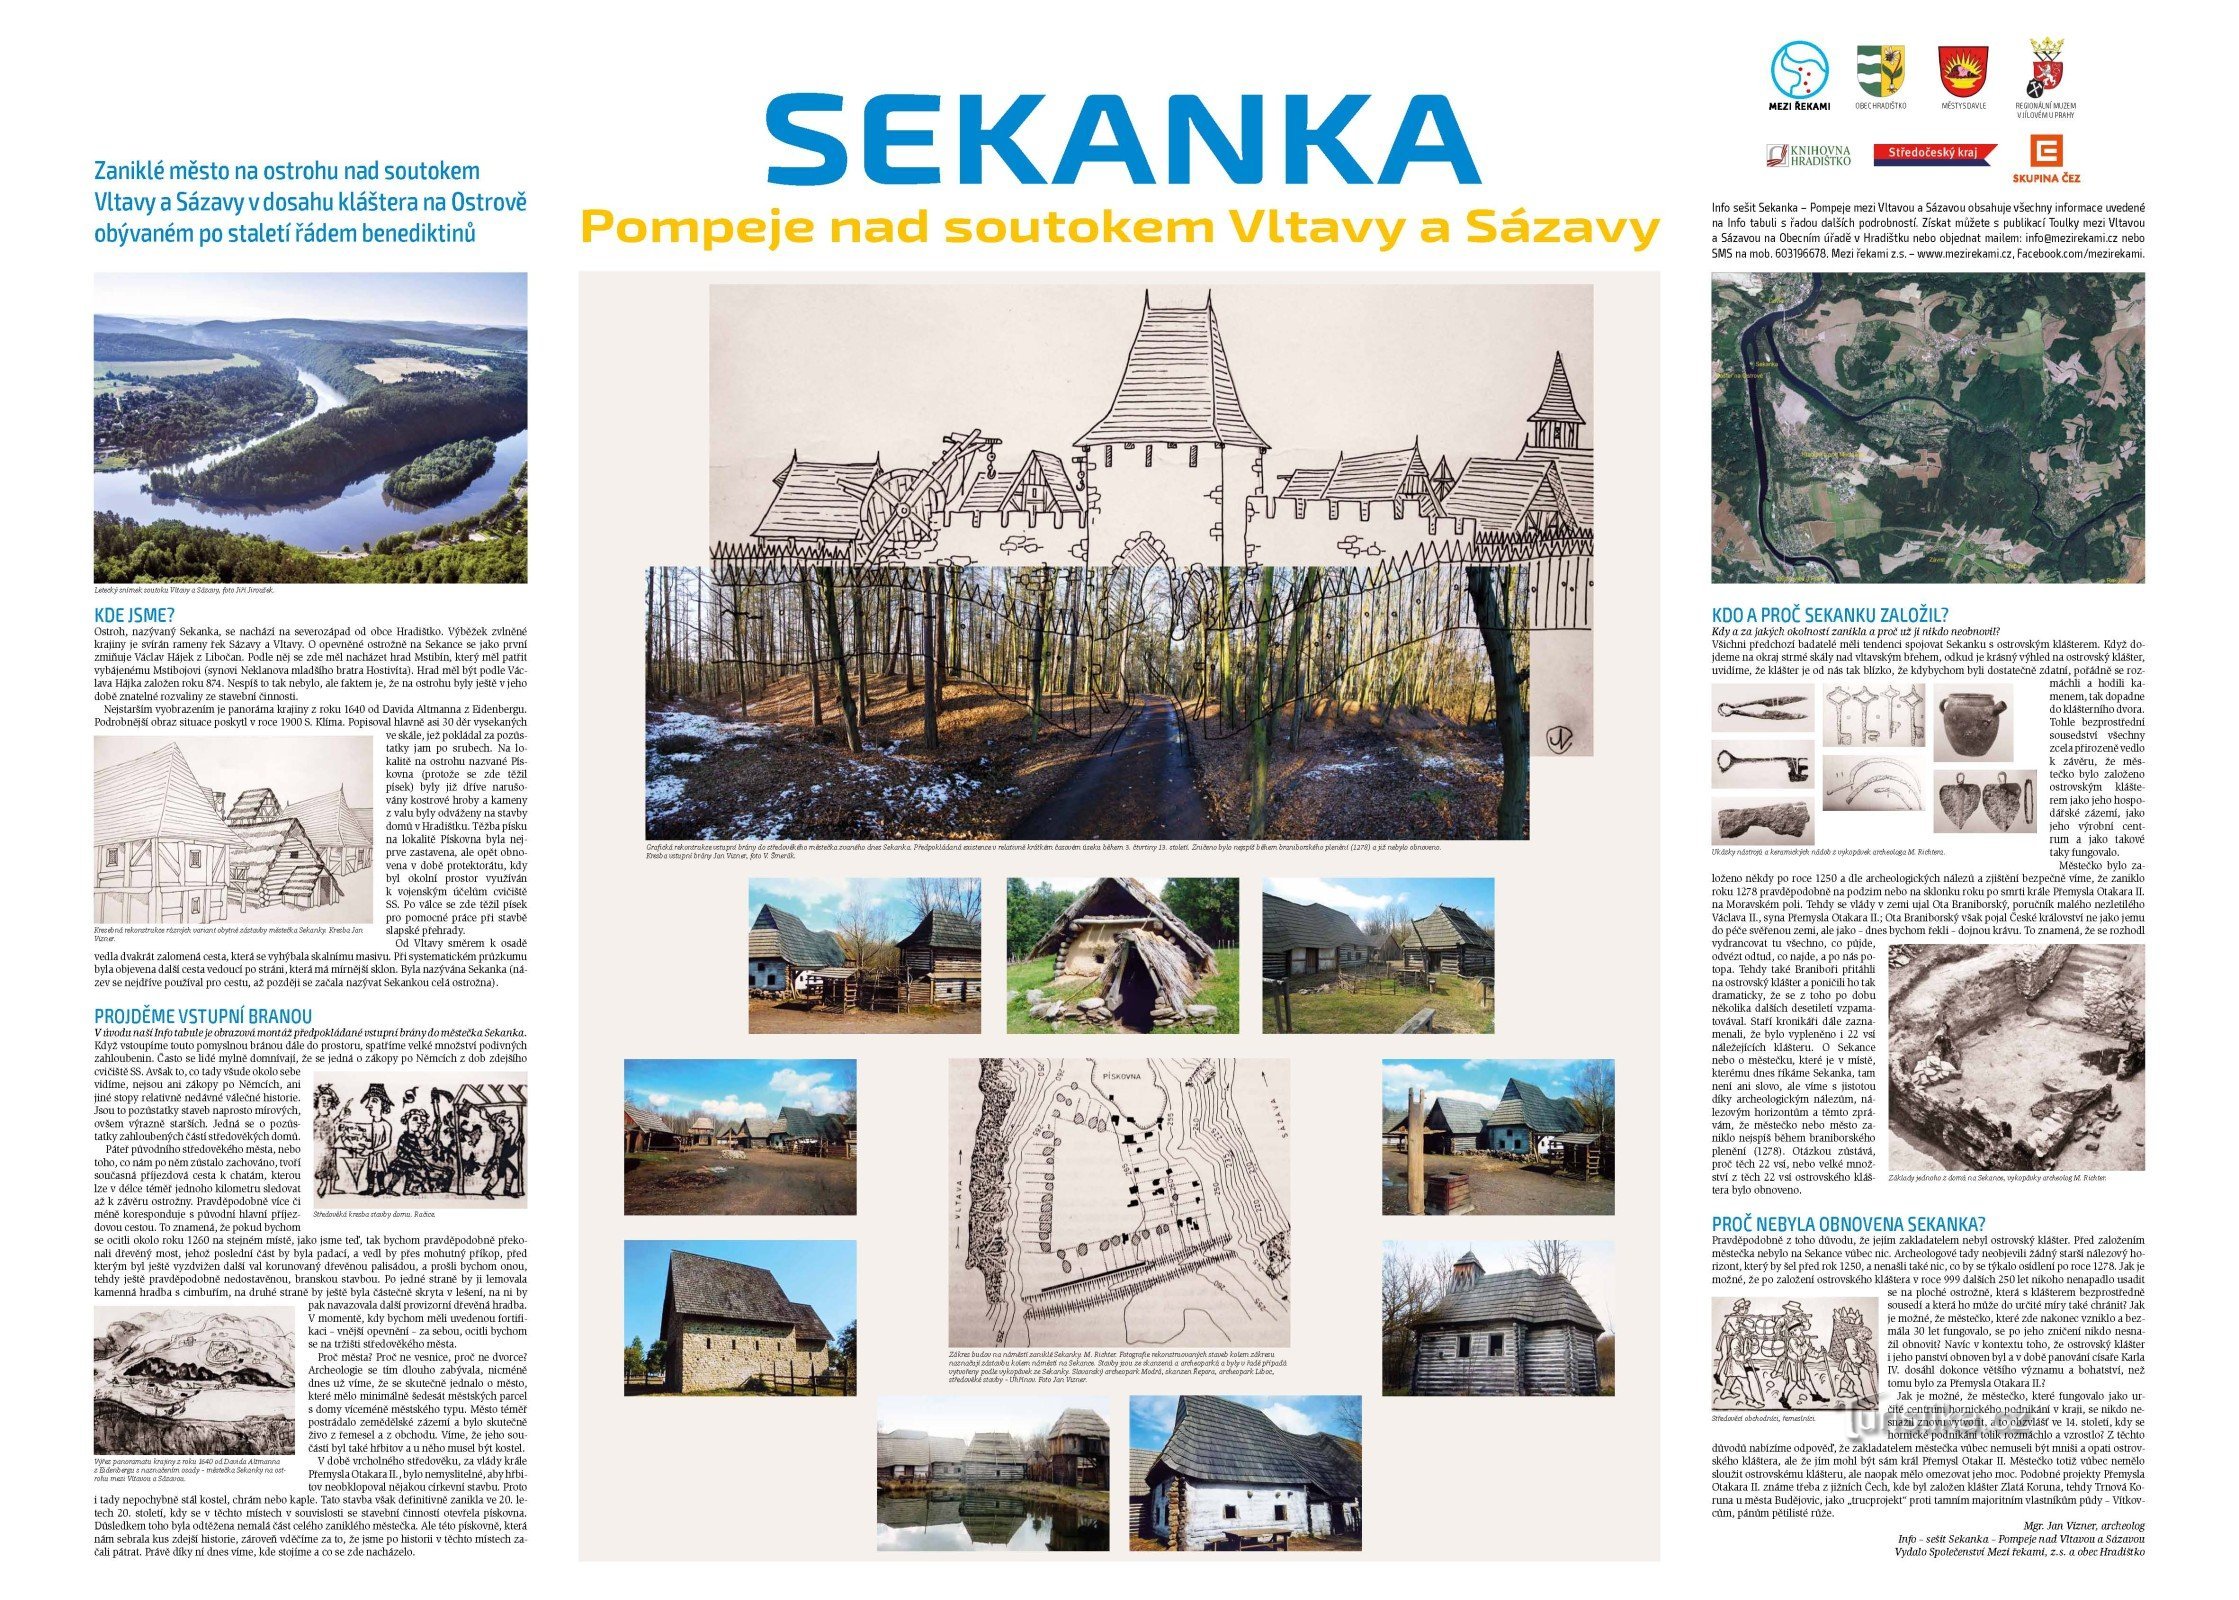 Информационная панель с историей Секанки